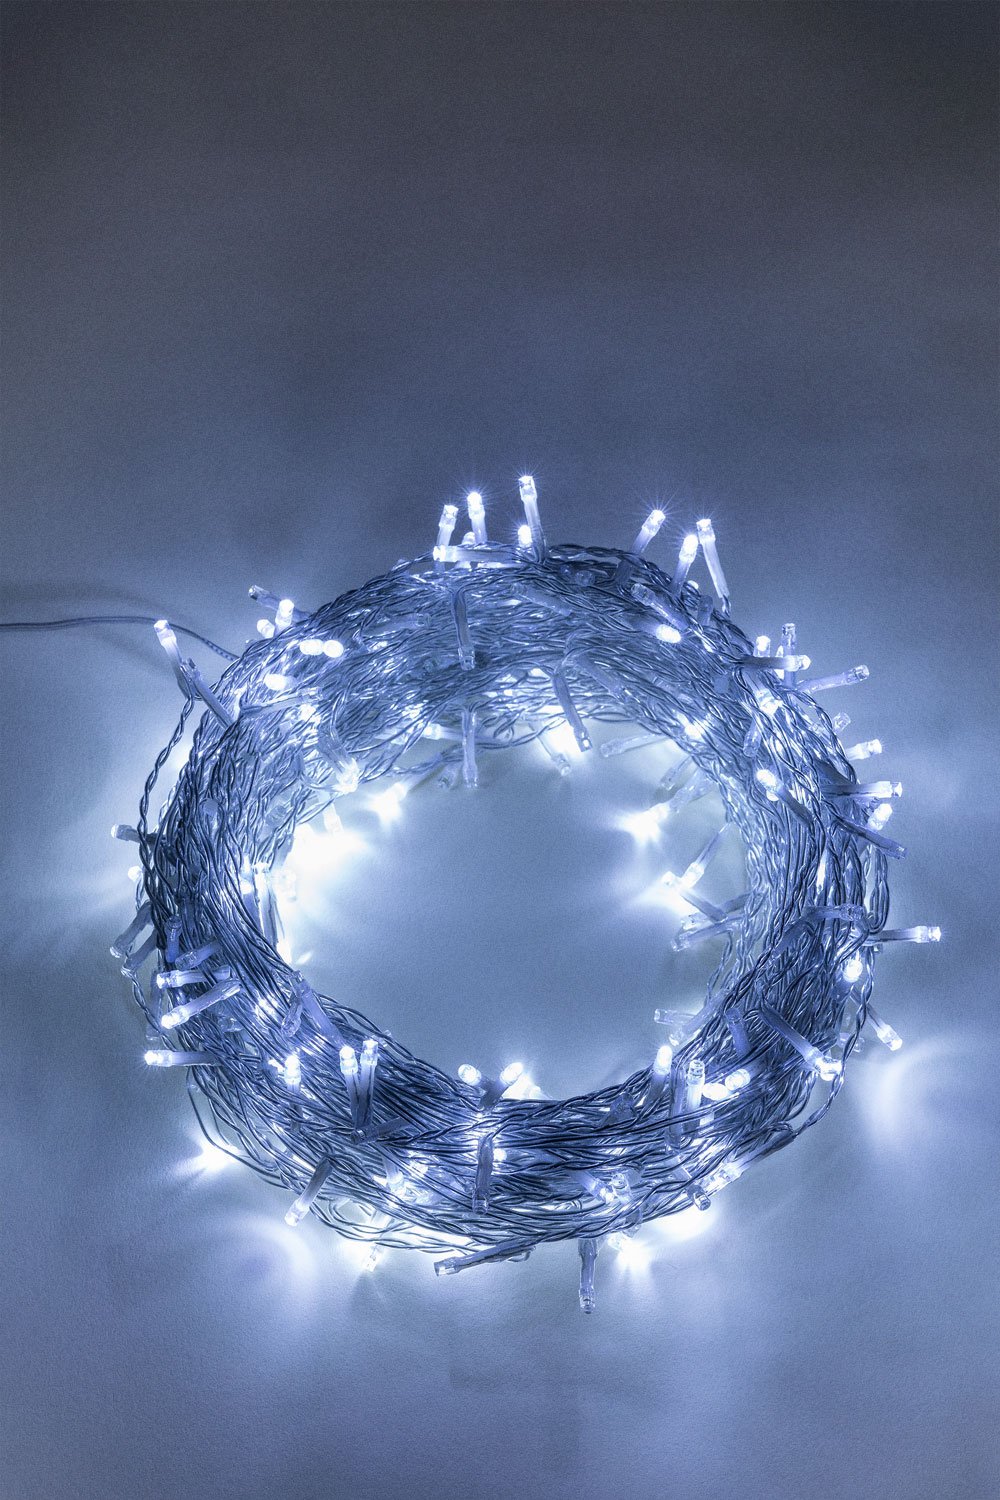 LED gordijnverlichting (9M) voor de tuin Lexy, galerij beeld 1